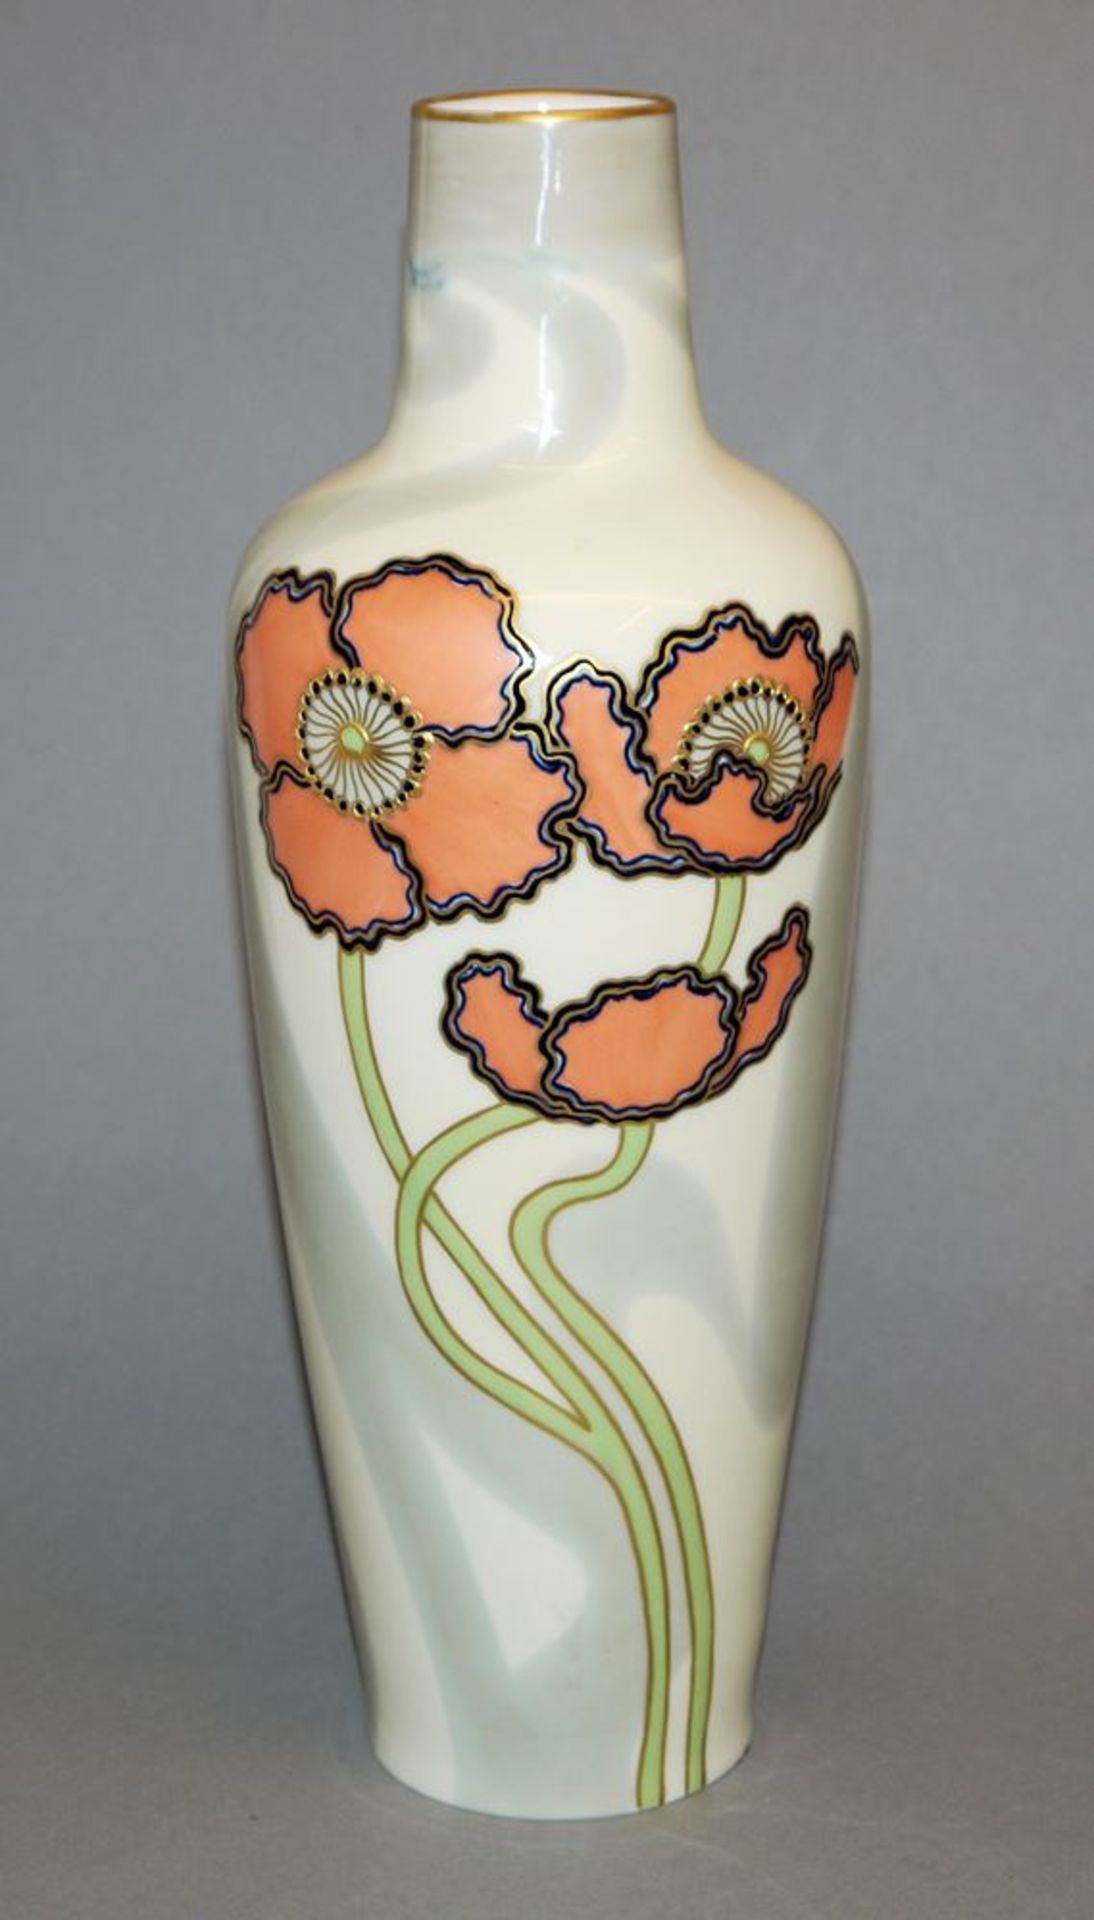 Porzellan-Vase des Jugendstils mit Anemonen, Ernst Wahliss, Wien